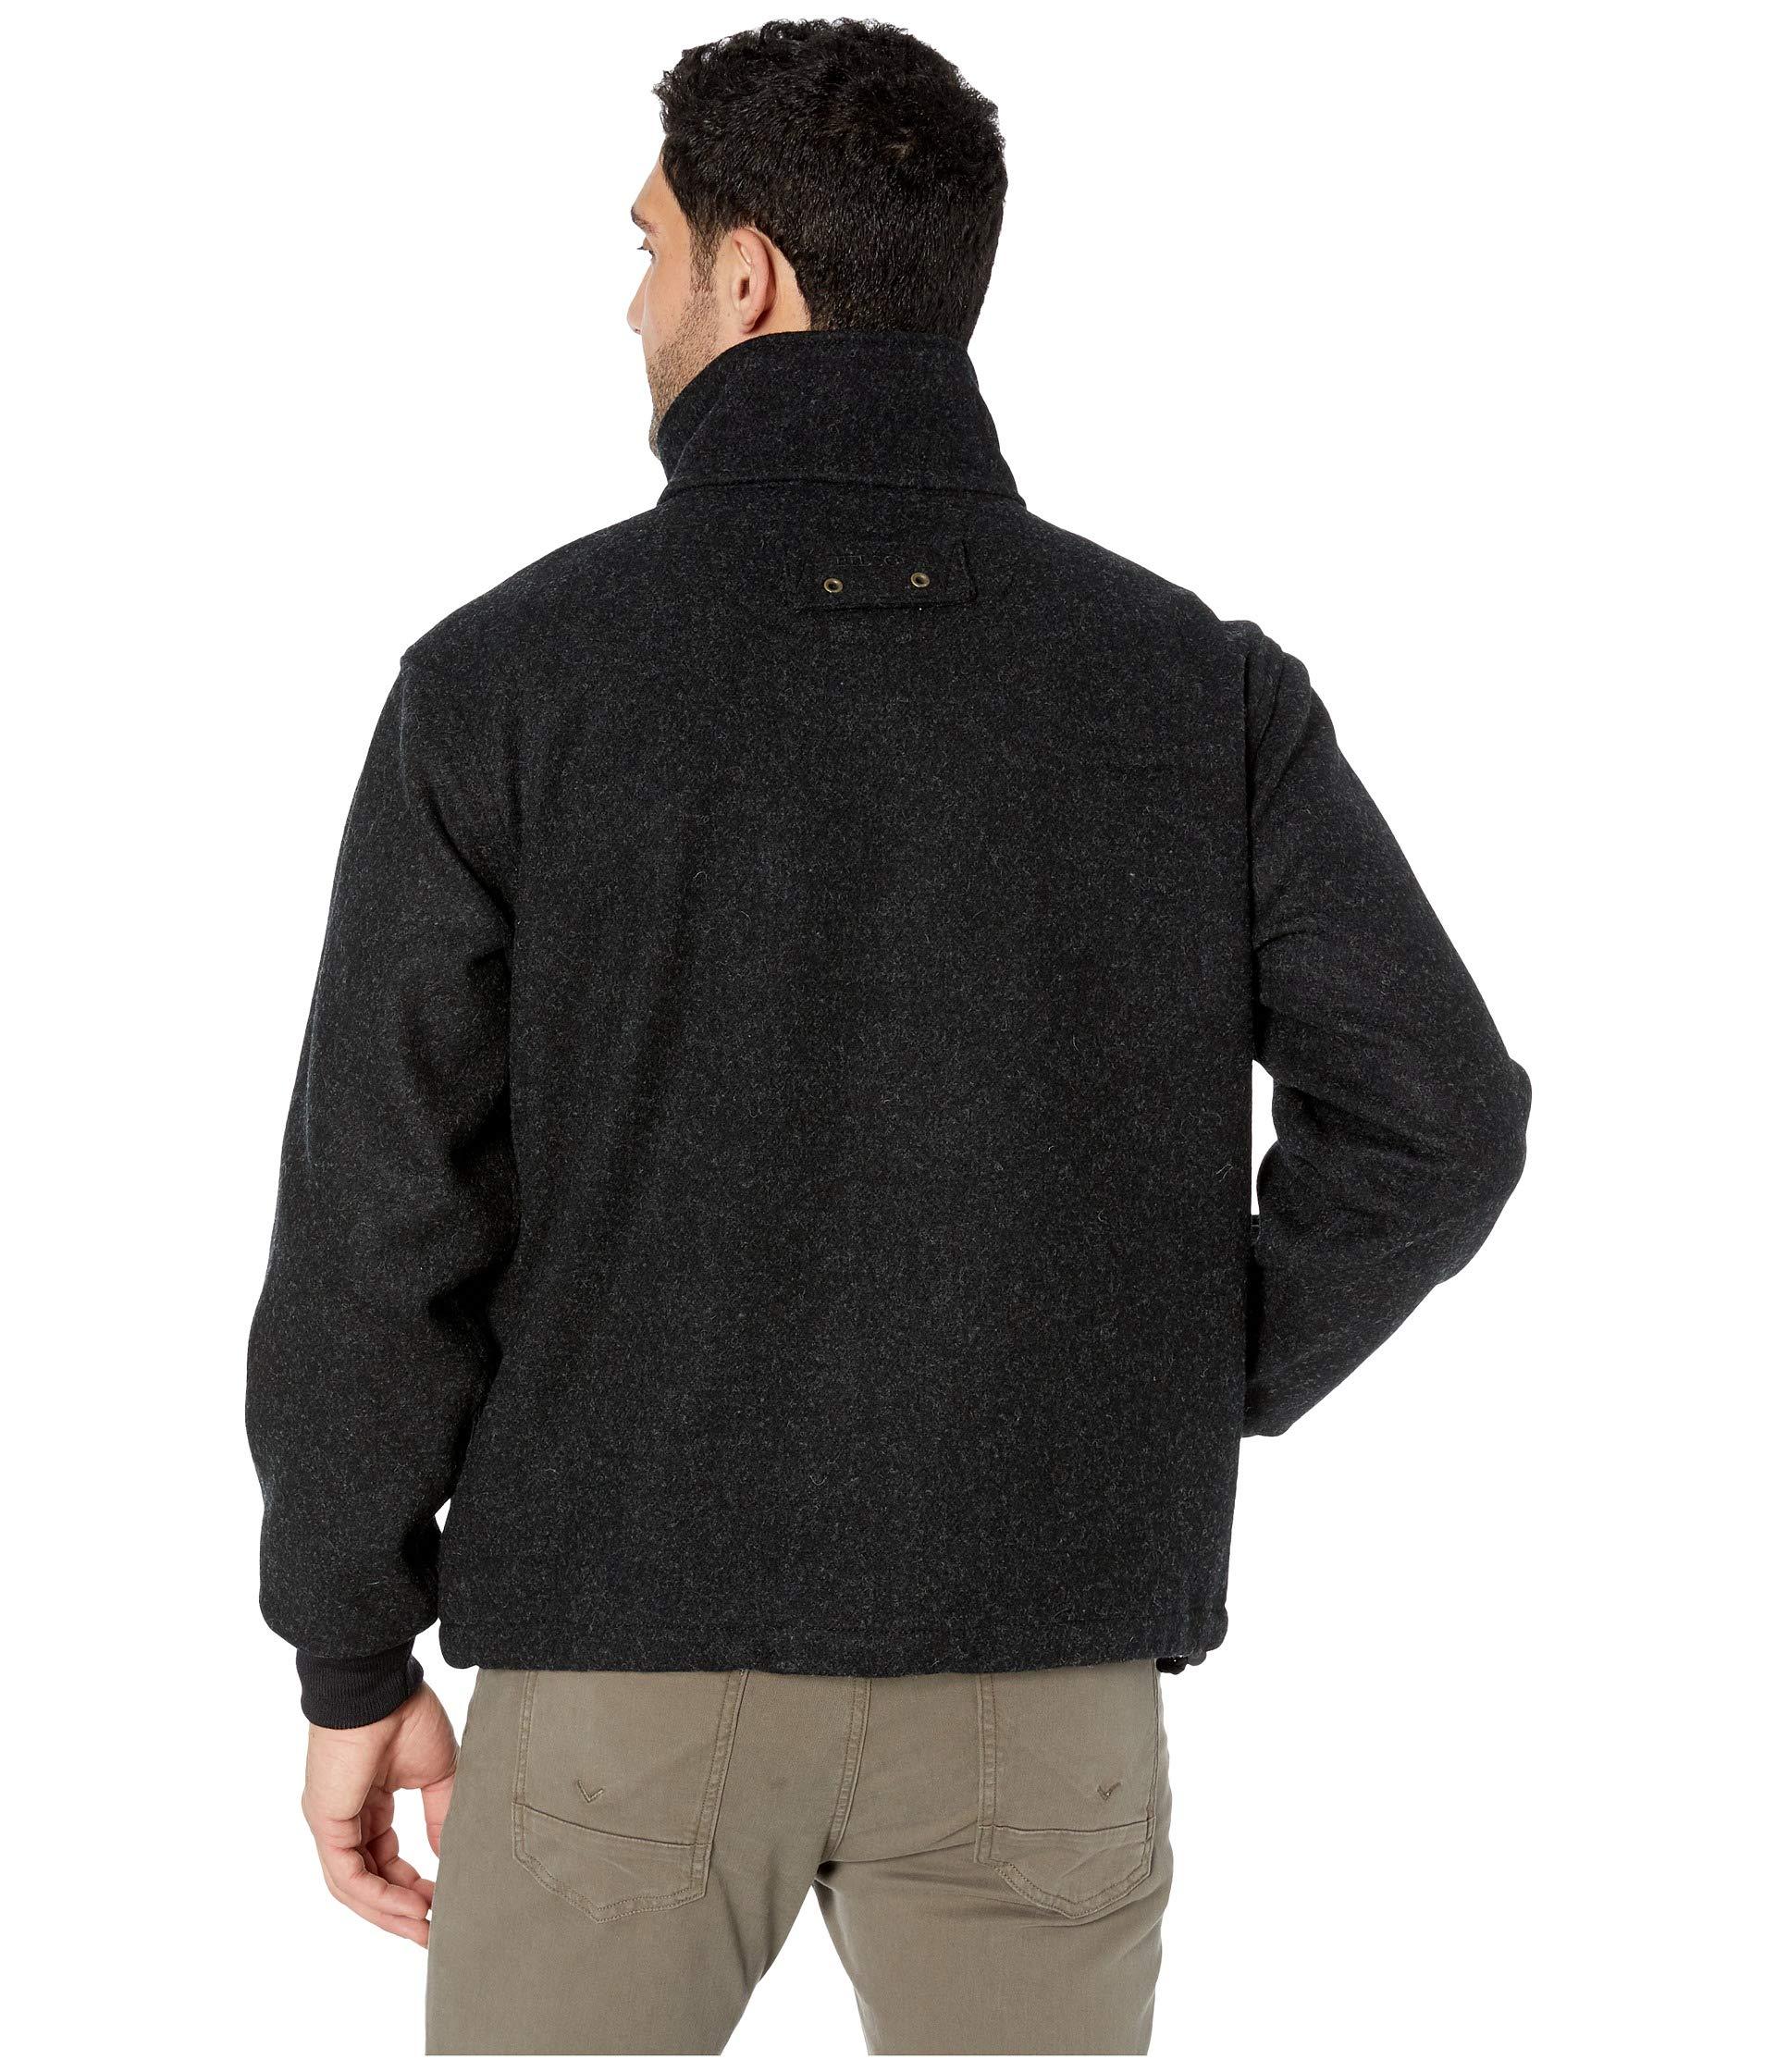 Filson Mackinaw Wool Field Jacket in Charcoal (Gray) for Men - Lyst